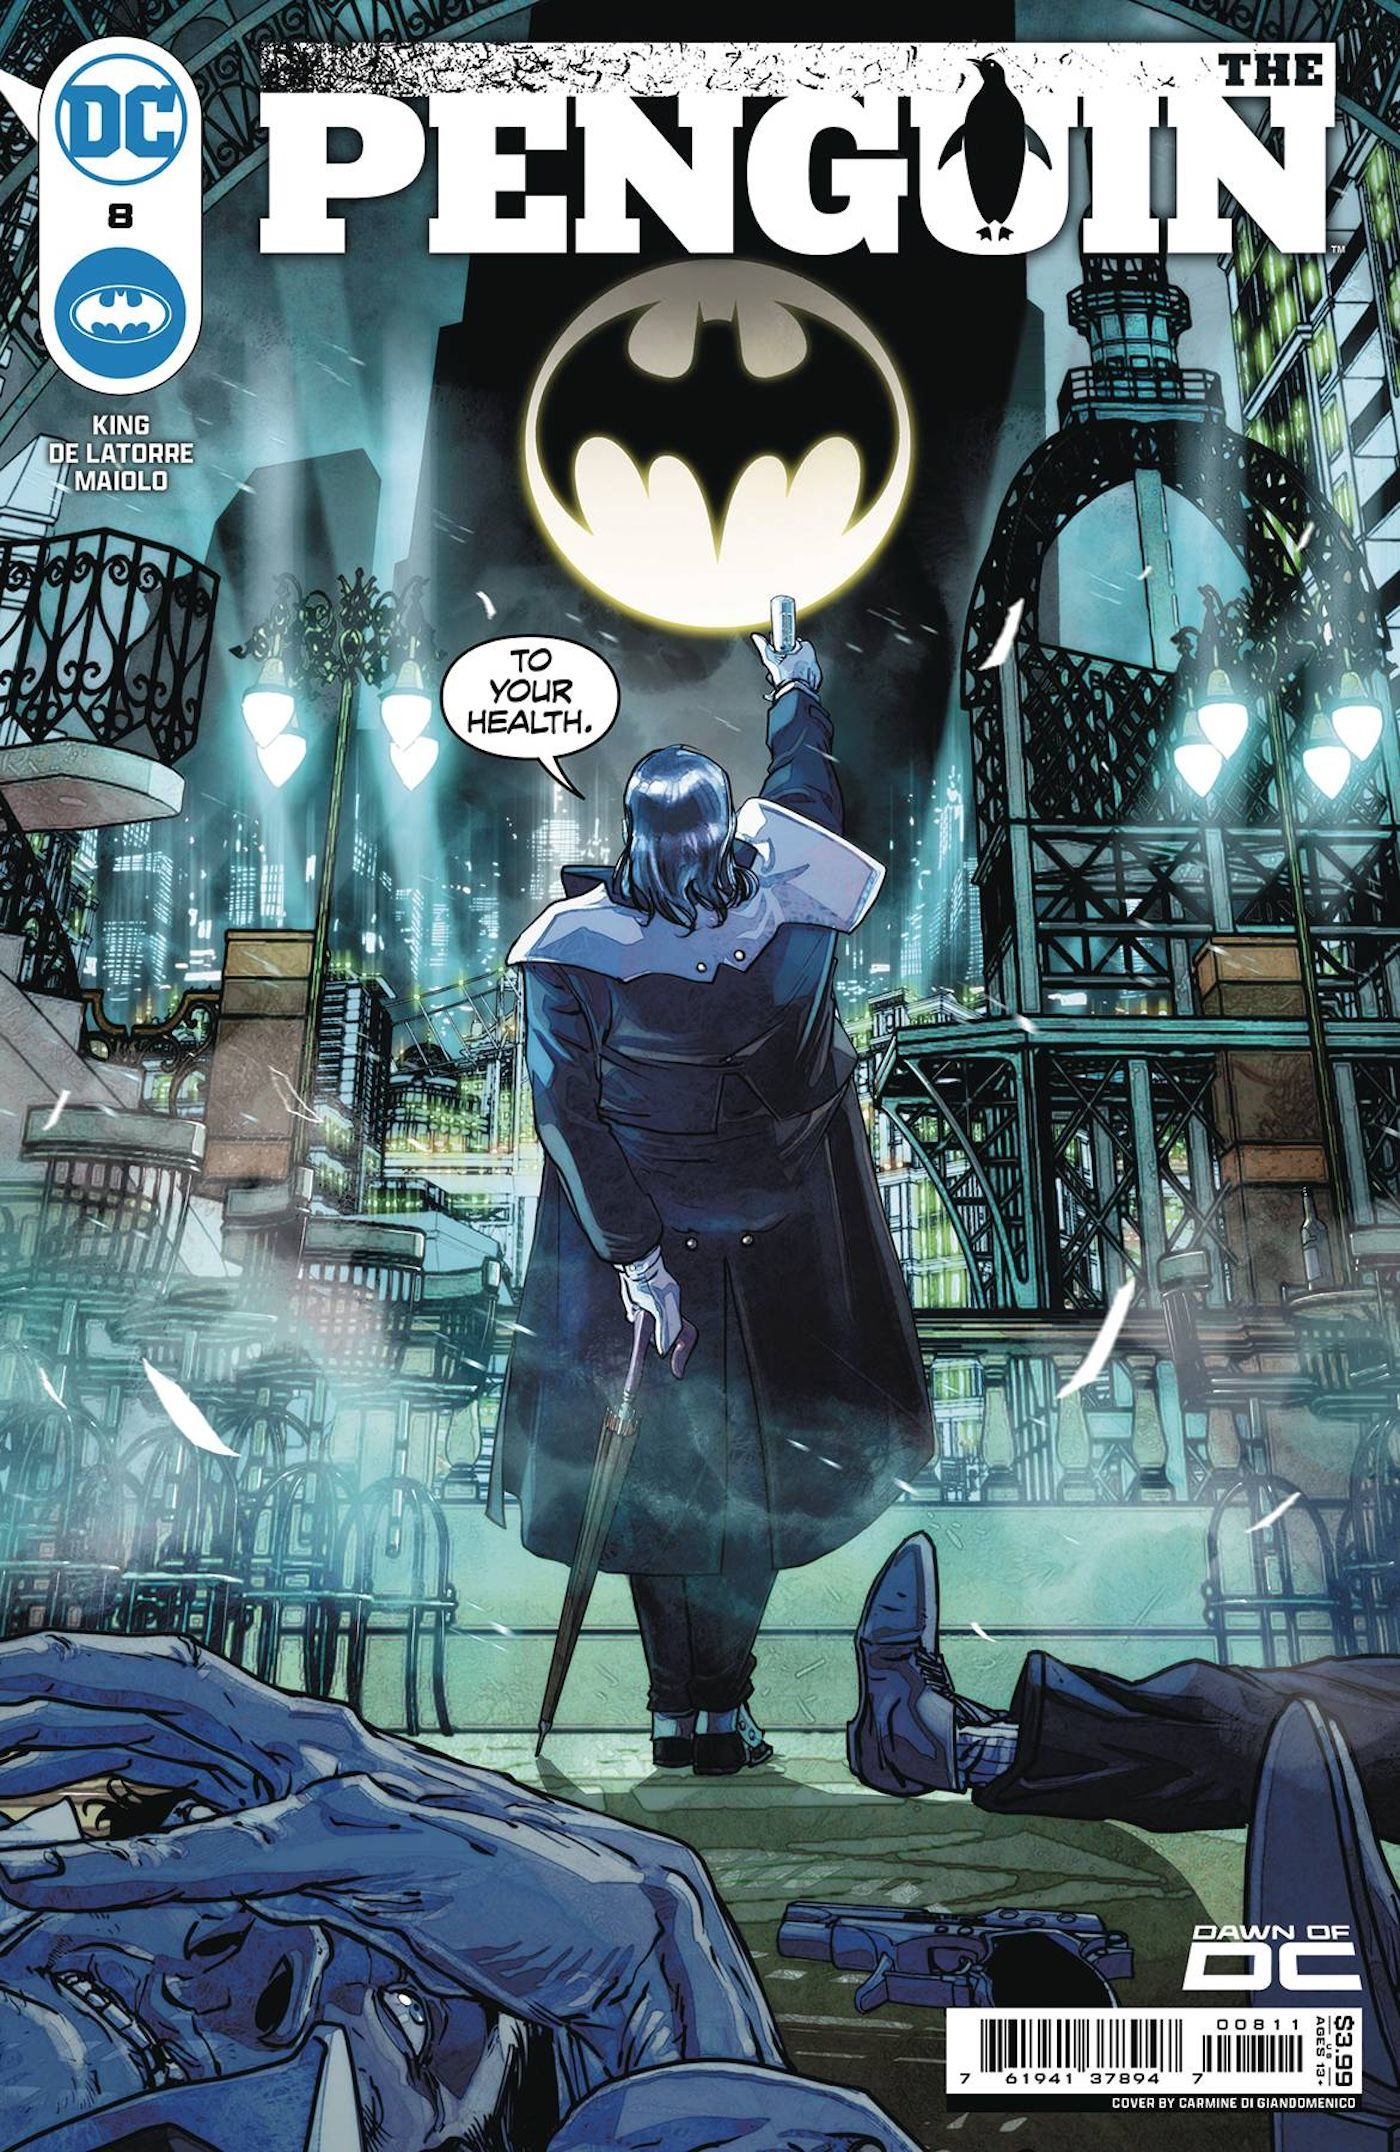 Capa principal do Penguin 8: o Pinguim em Gotham aponta para o Bat-Signal.